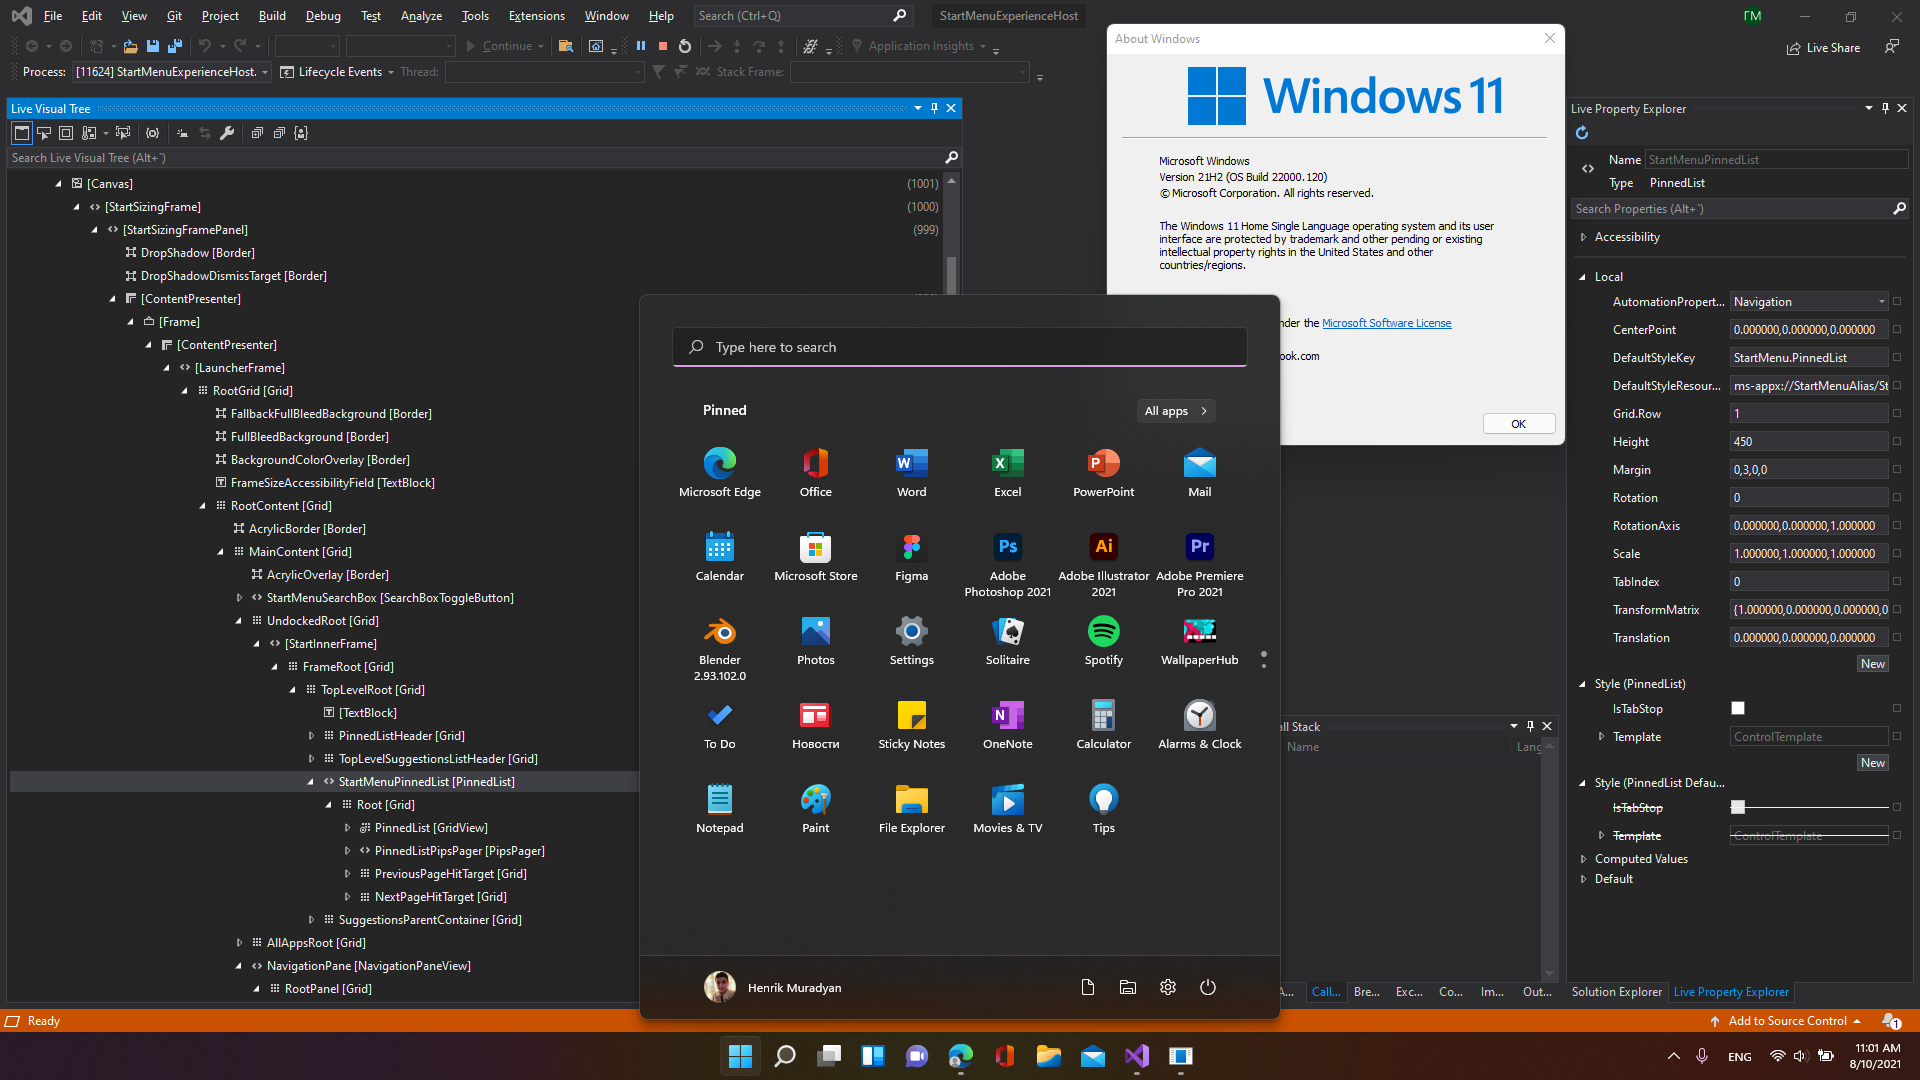 Windows 11 Startmenü: Empfohlen-Bereich könnte sich zukünftig ausblenden lassen